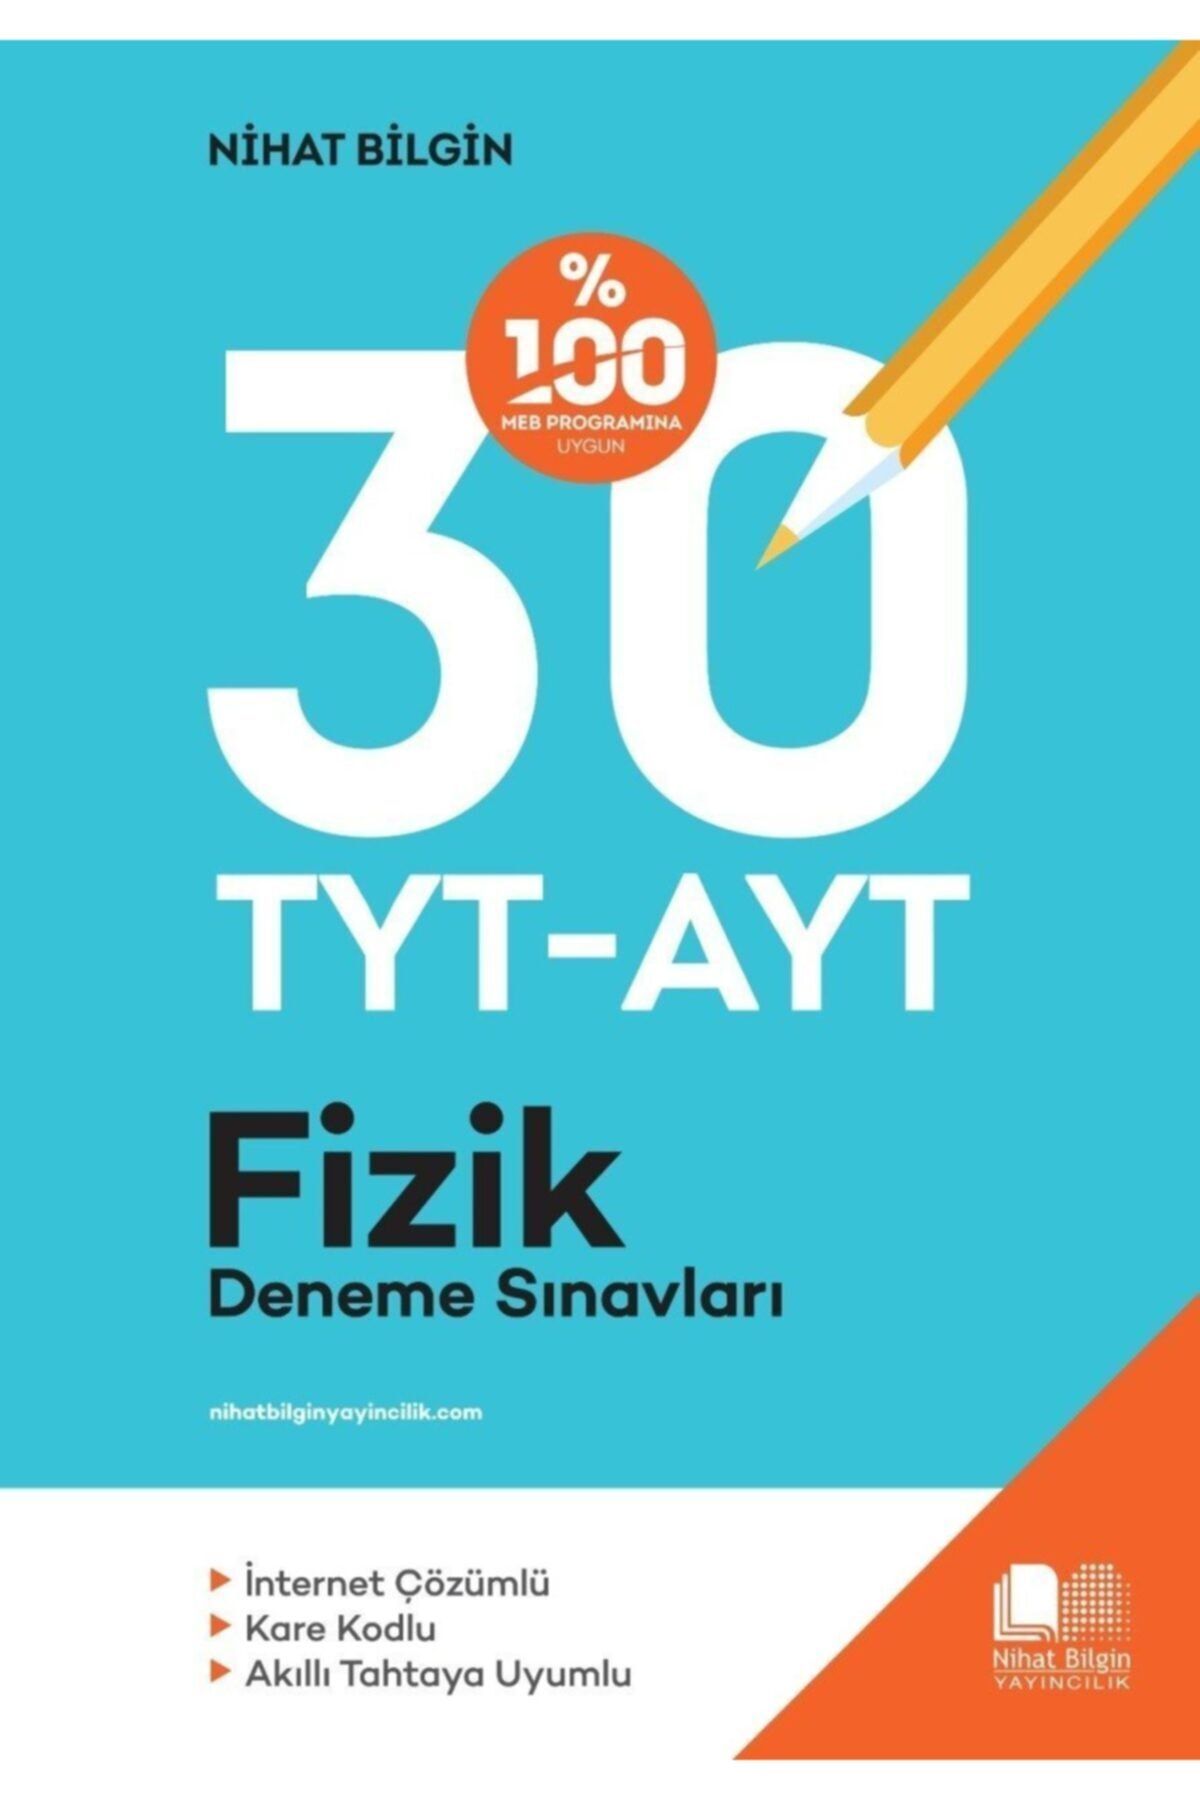 Nihat Bilgin Yayınları Nihat Bilgin Tyt Ayt Fizik Denemeleri 30 Tyt 30 Ayt